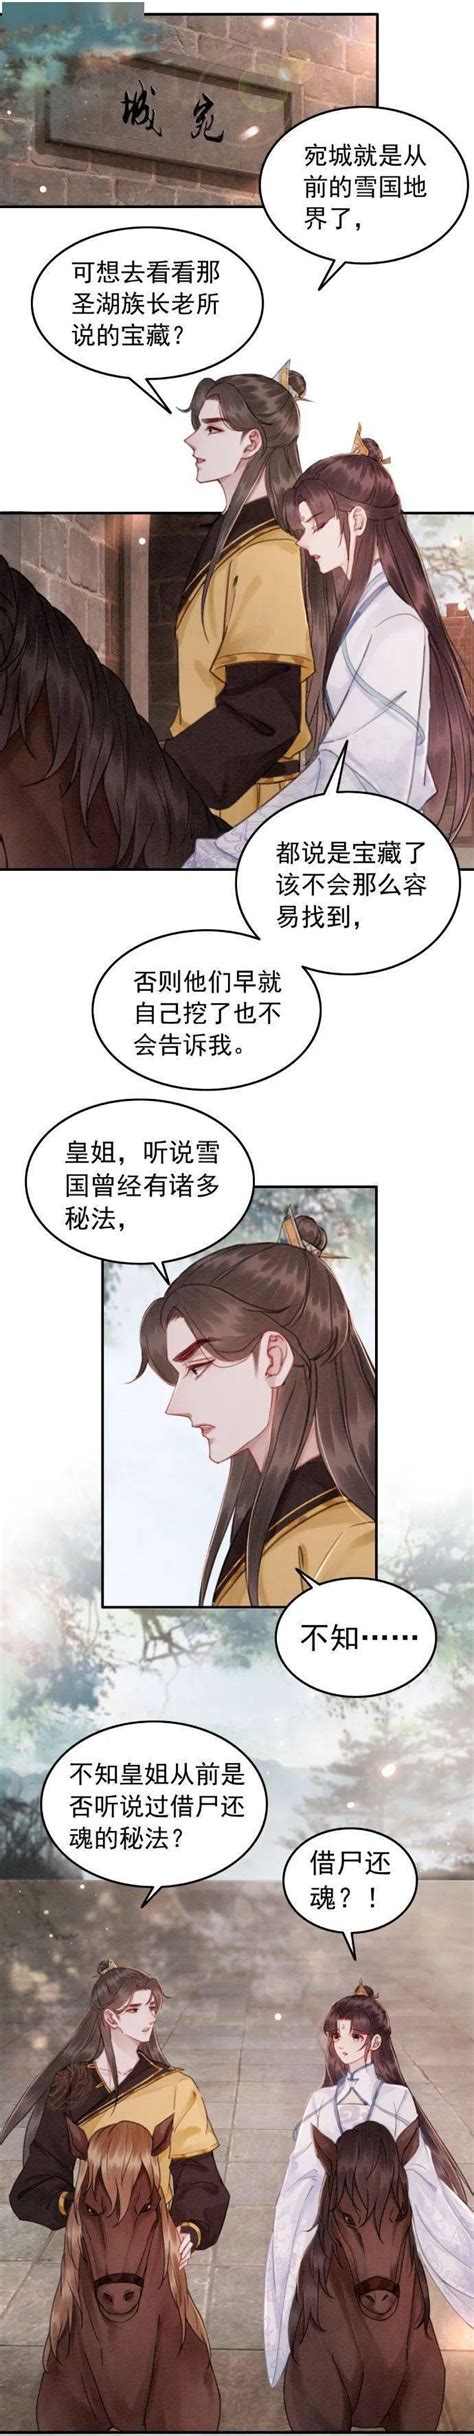 《皇姐，朕错了》小说在线阅读-起点中文网